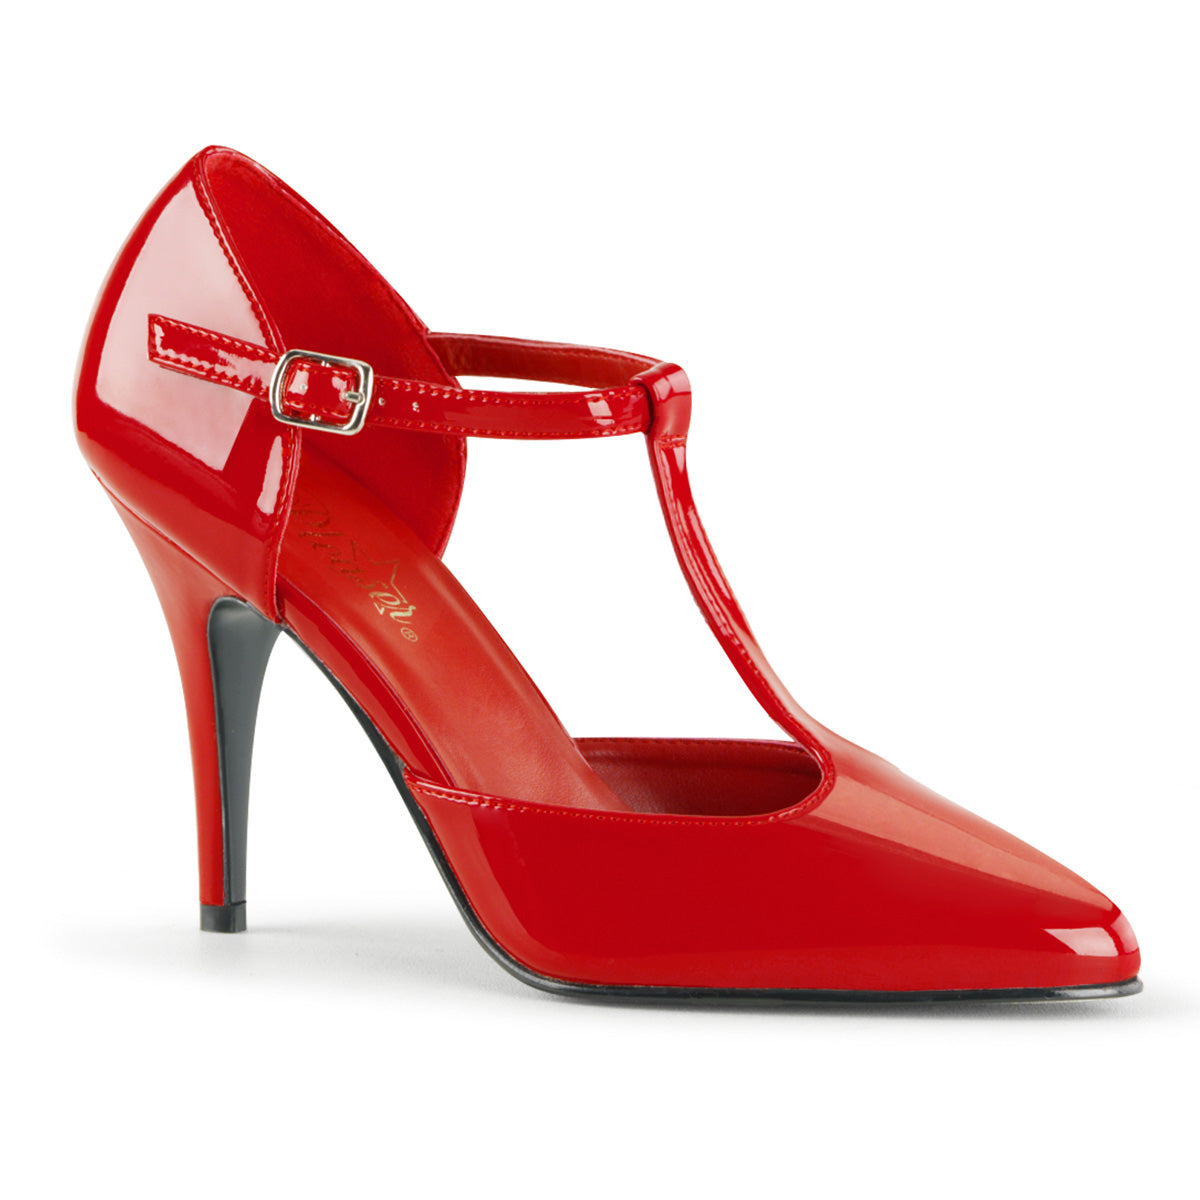 VANITY-415 Pleaser Shoes 4 Inch Heel Red Fetish Footwear